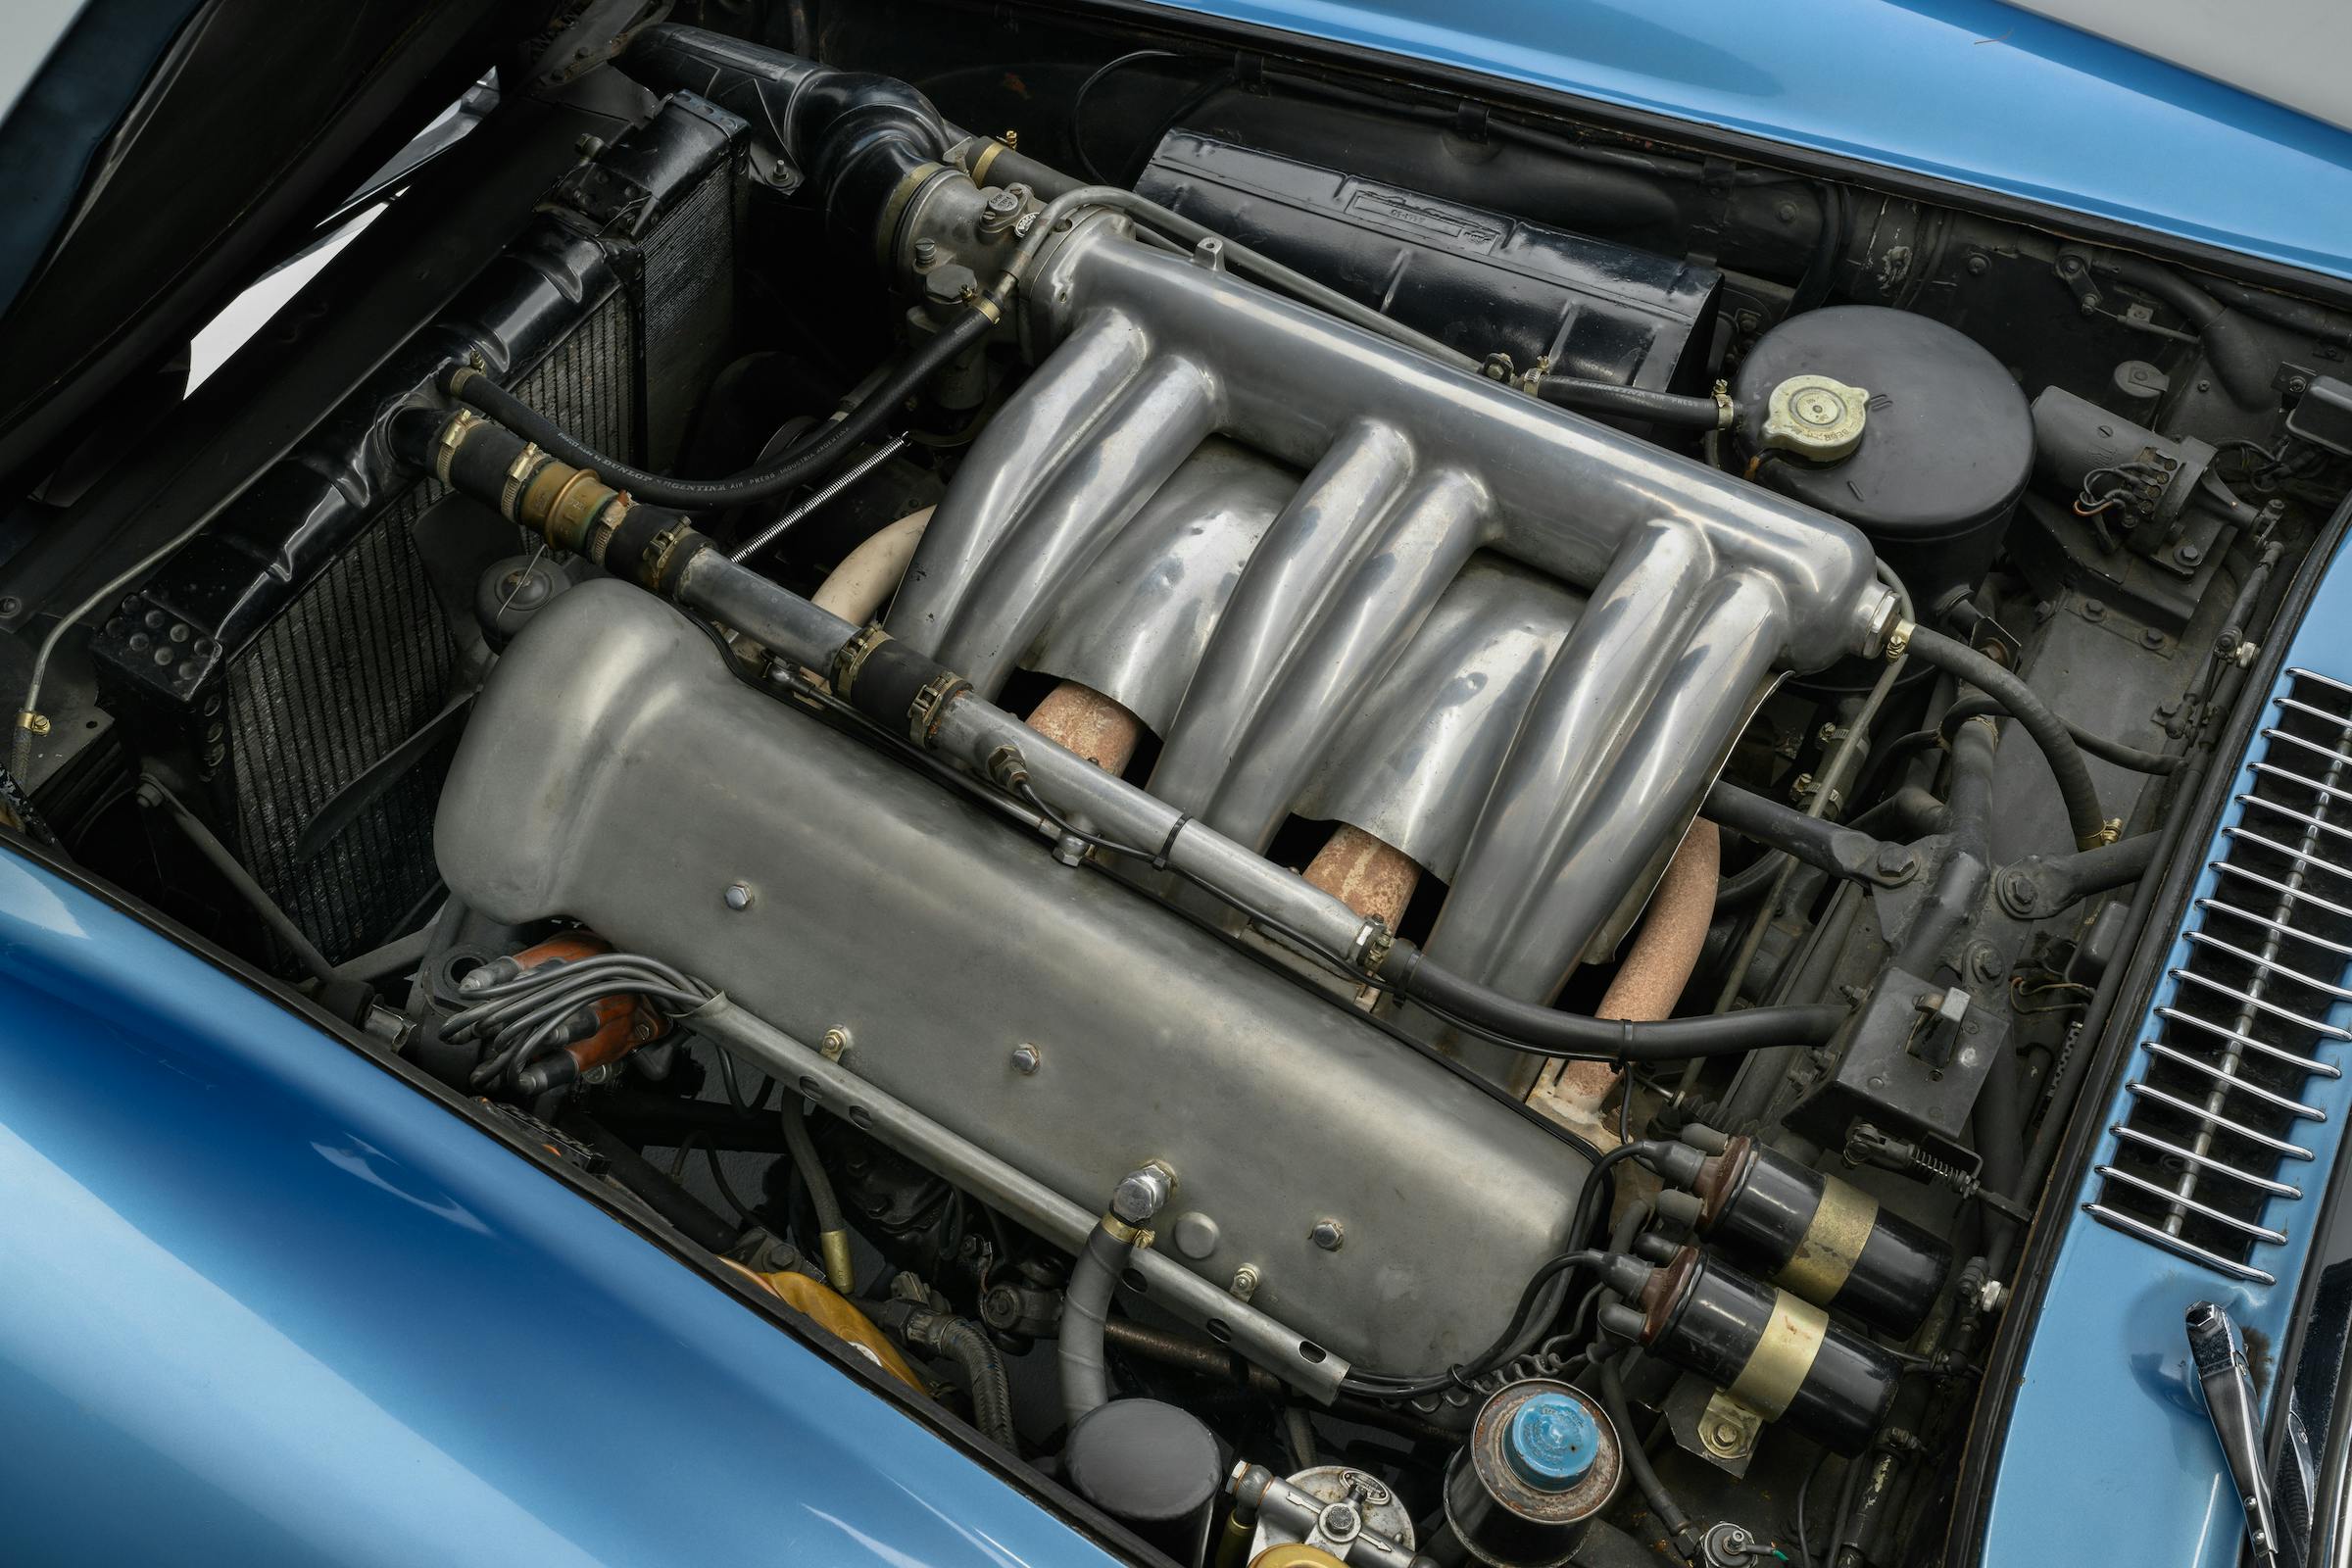 1958 Mercedes-Benz 300 SL roadster engine bay